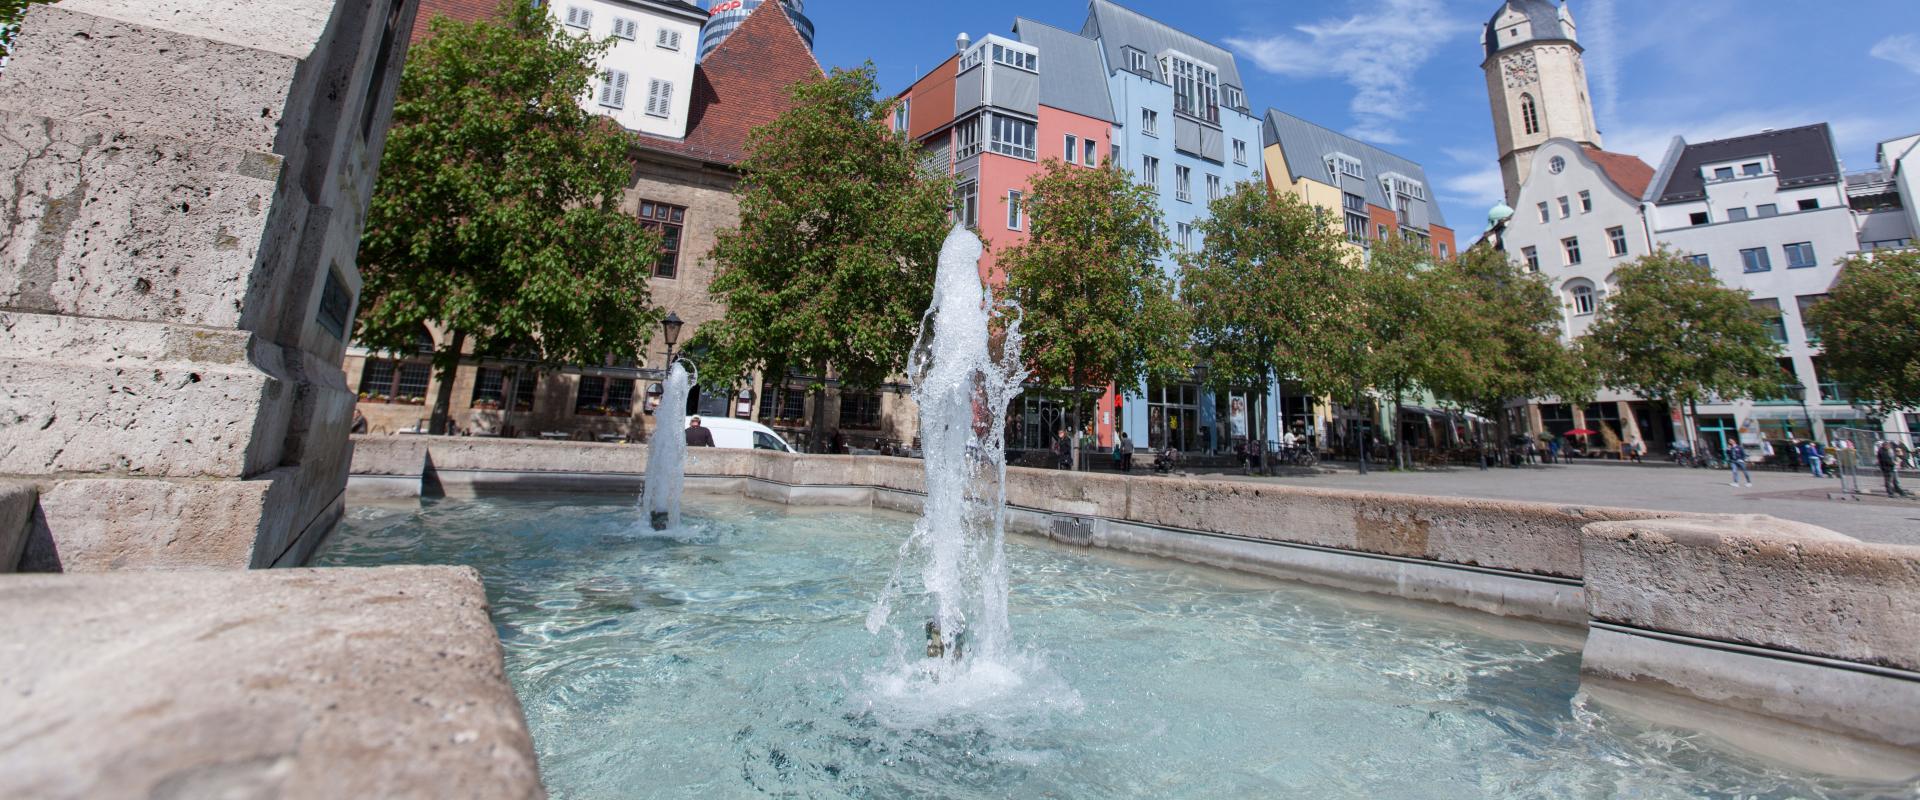 Bismarckbrunnen auf dem Marktplatz Jena